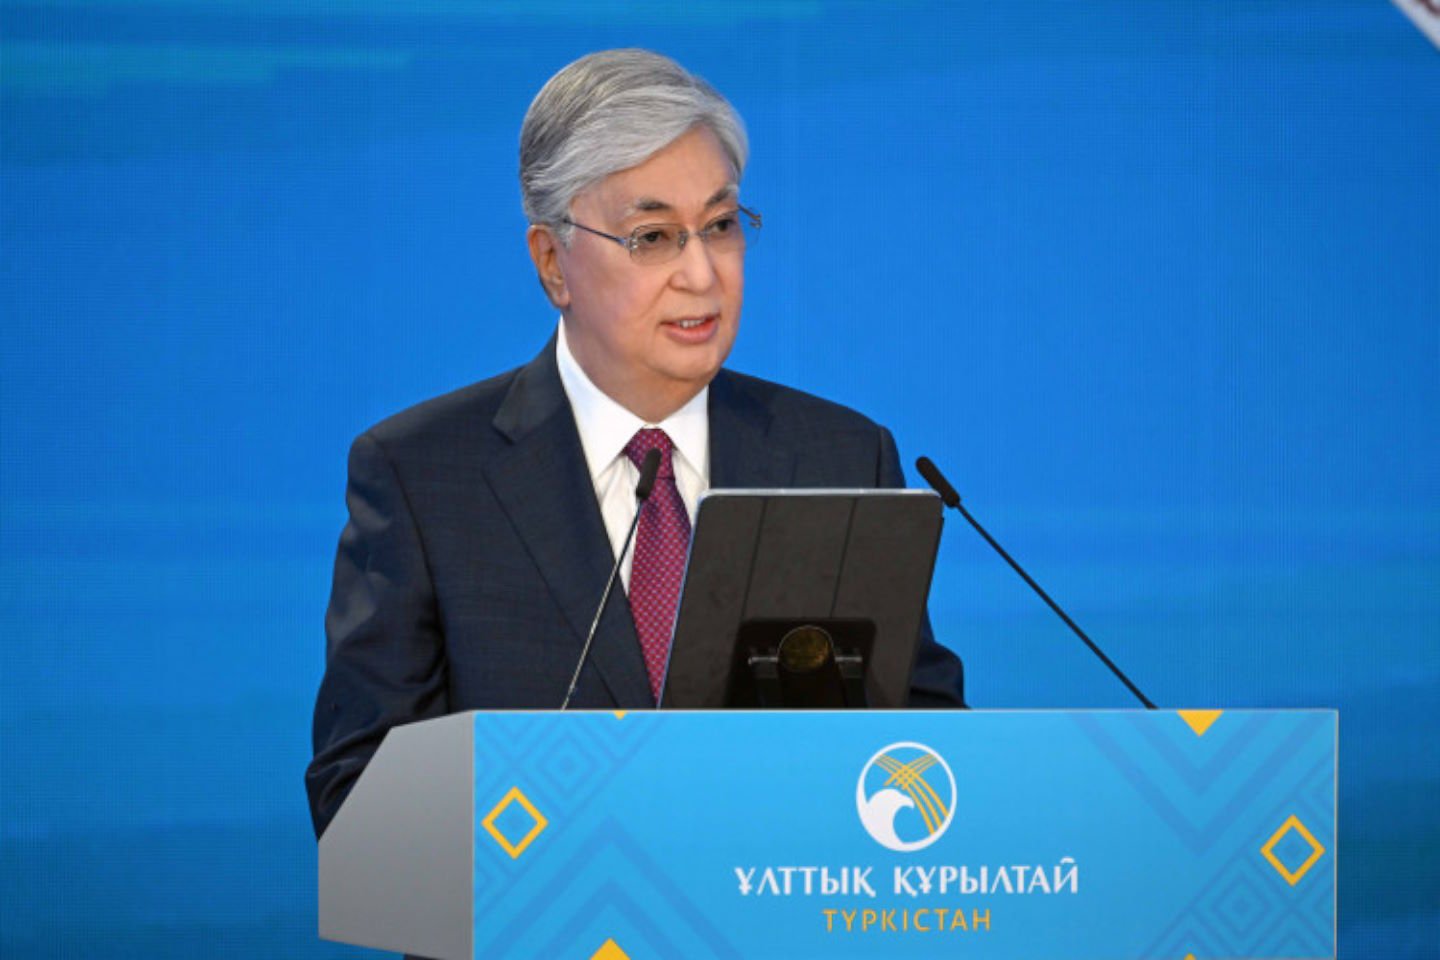 Новости Казахстана / Общество в Казахстане / Токаев предложил провести общенациональный референдум по АЭС